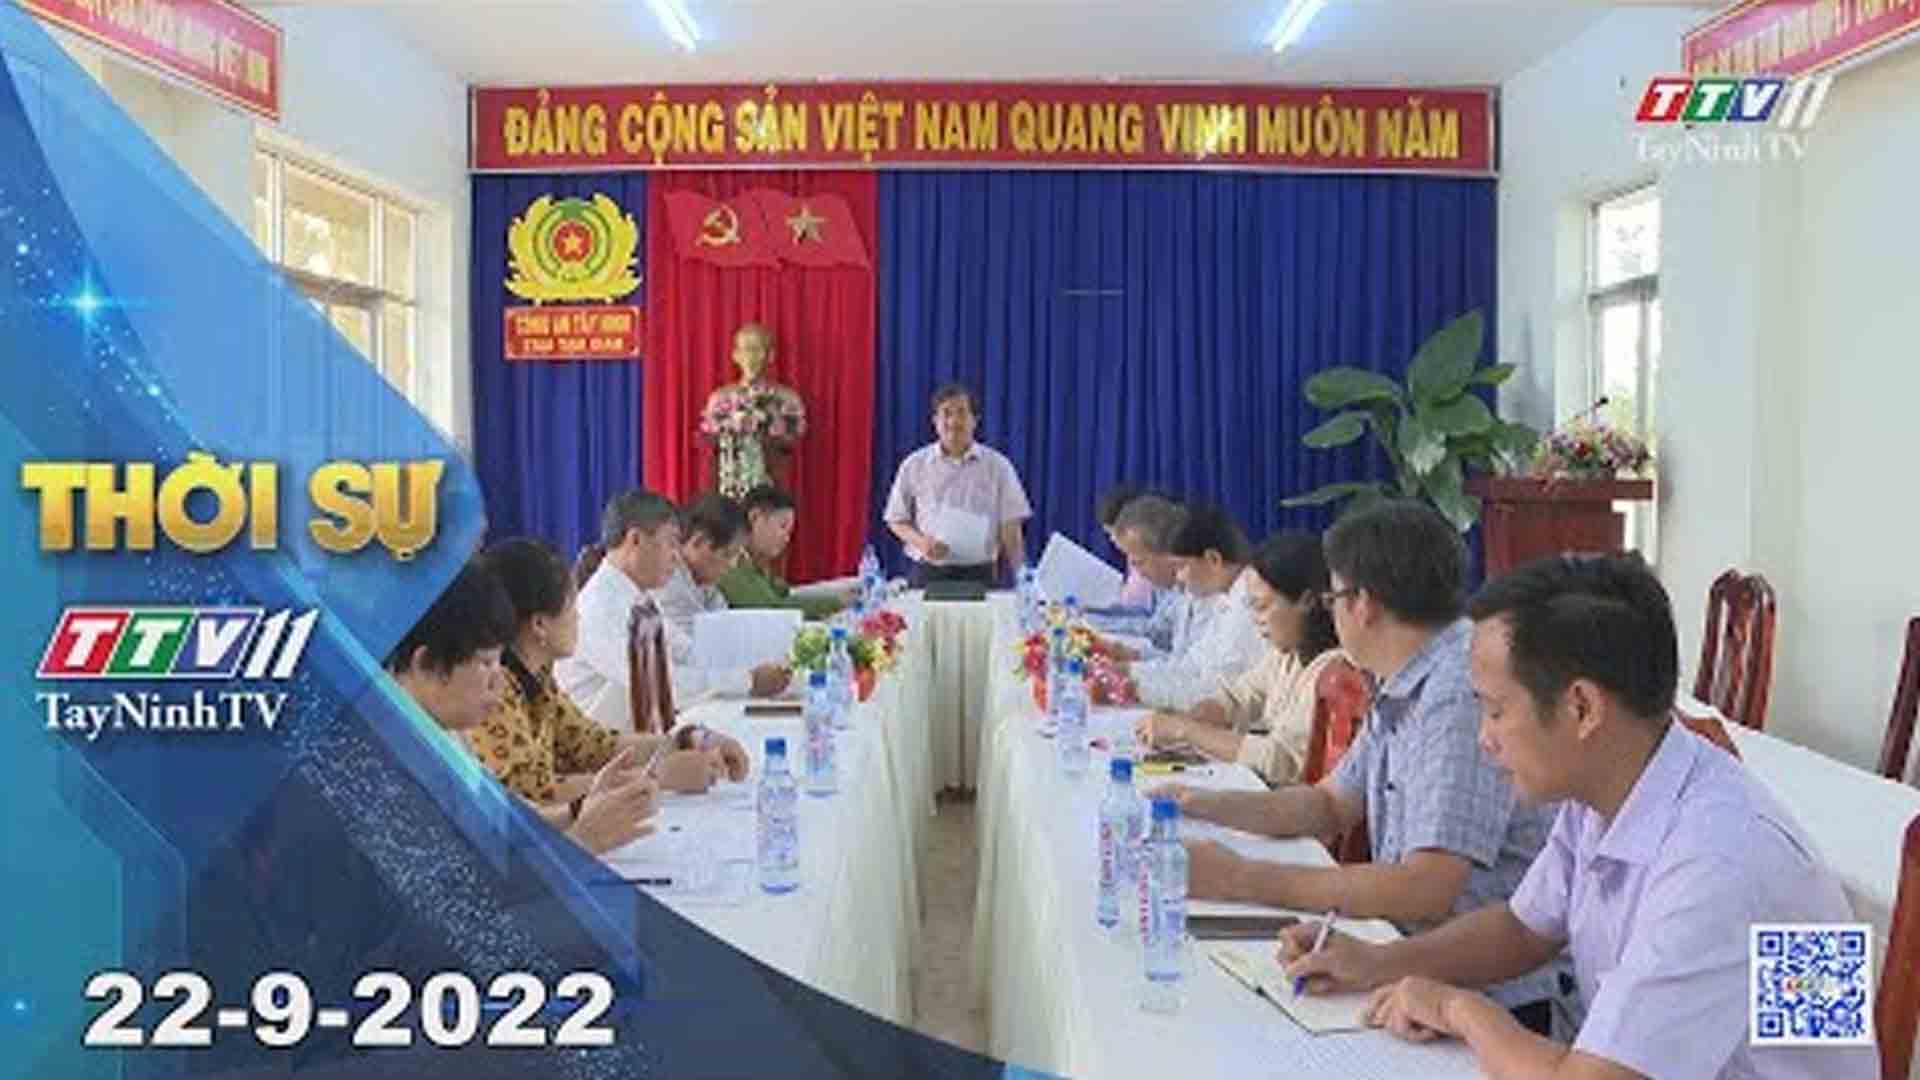 Thời sự Tây Ninh 22-9-2022 | Tin tức hôm nay | TayNinhTV